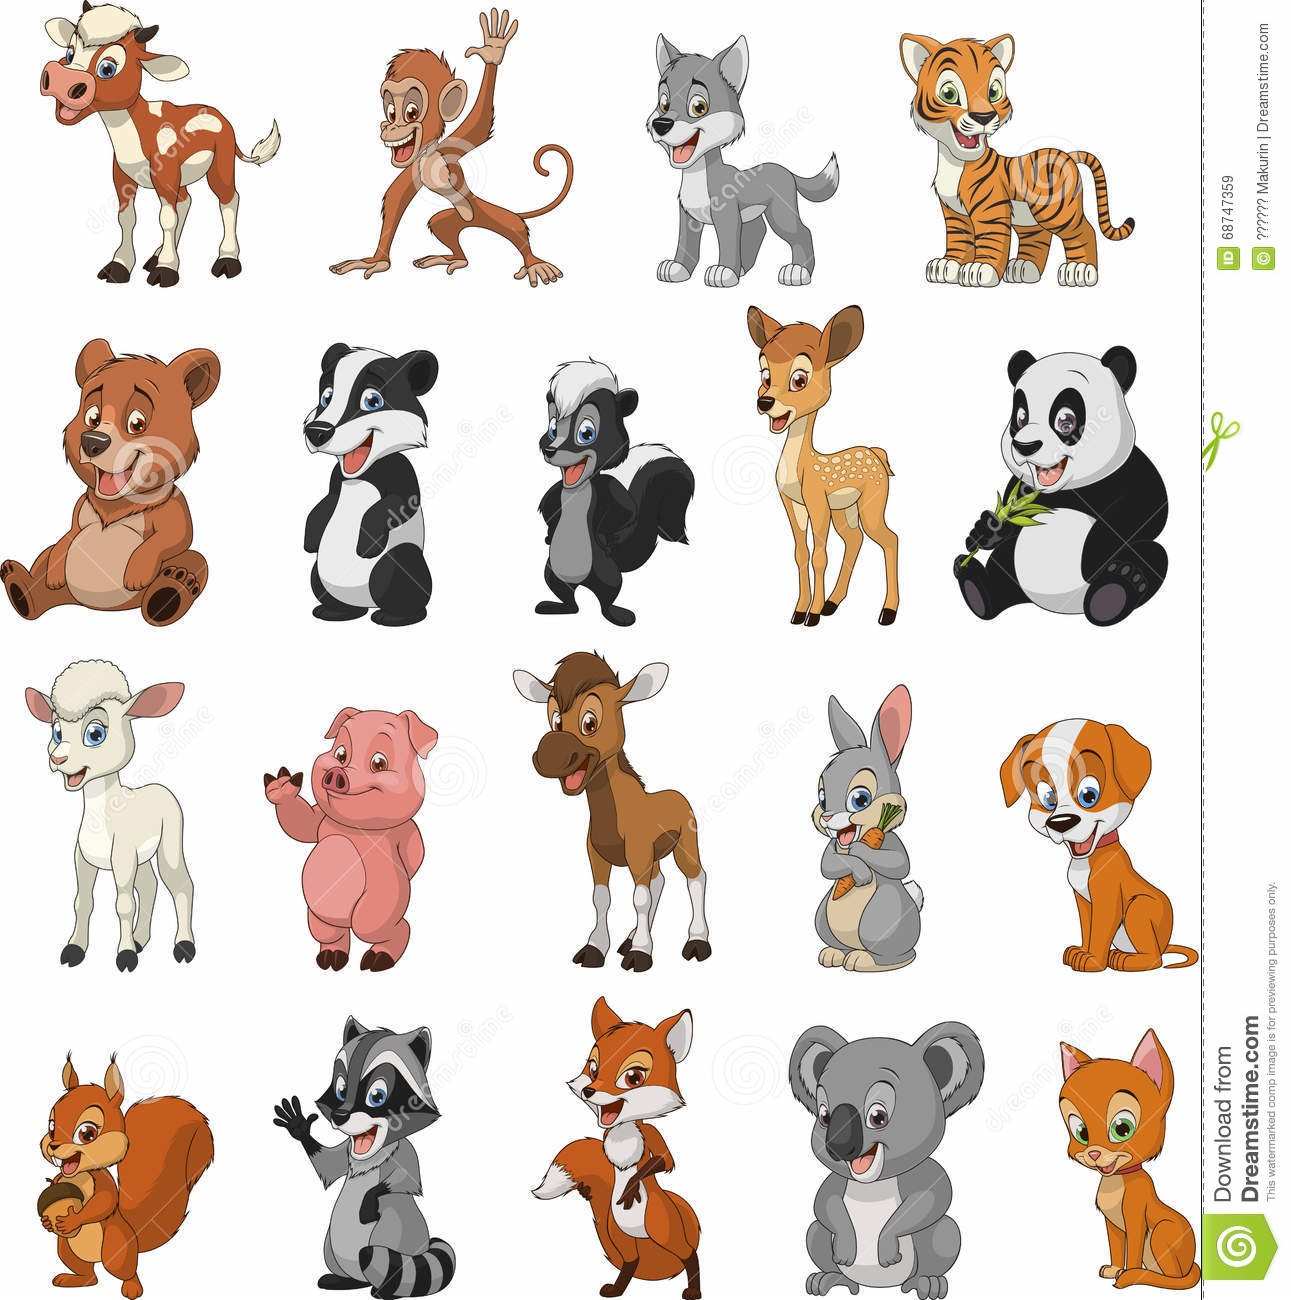 Картинки для детей с экзотическими животными 011